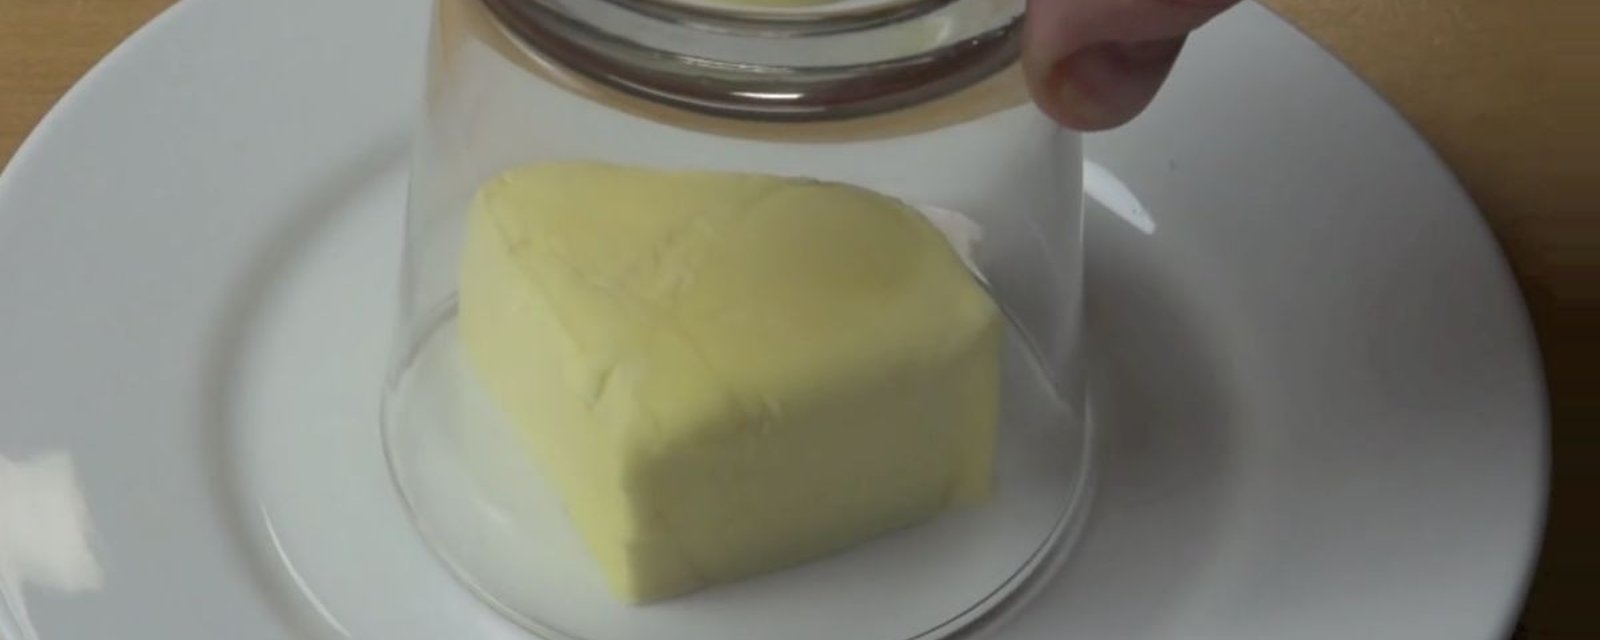 La raison pour laquelle il place un verre sur un carré de beurre est absolument géniale!